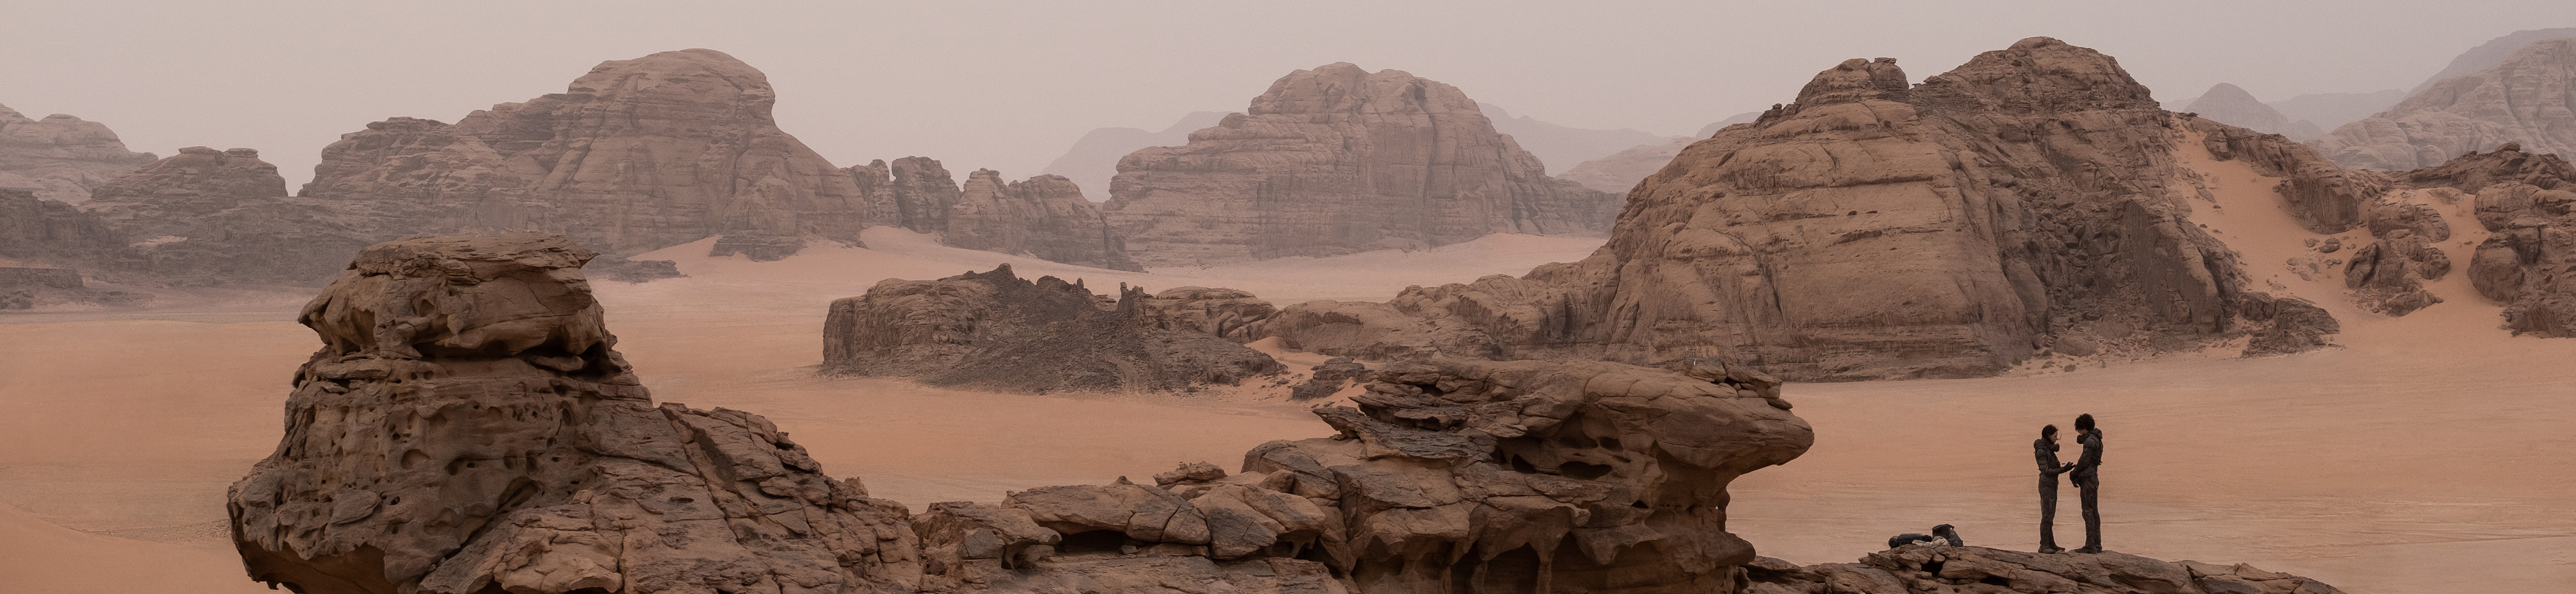 Desert scene from the film Dune